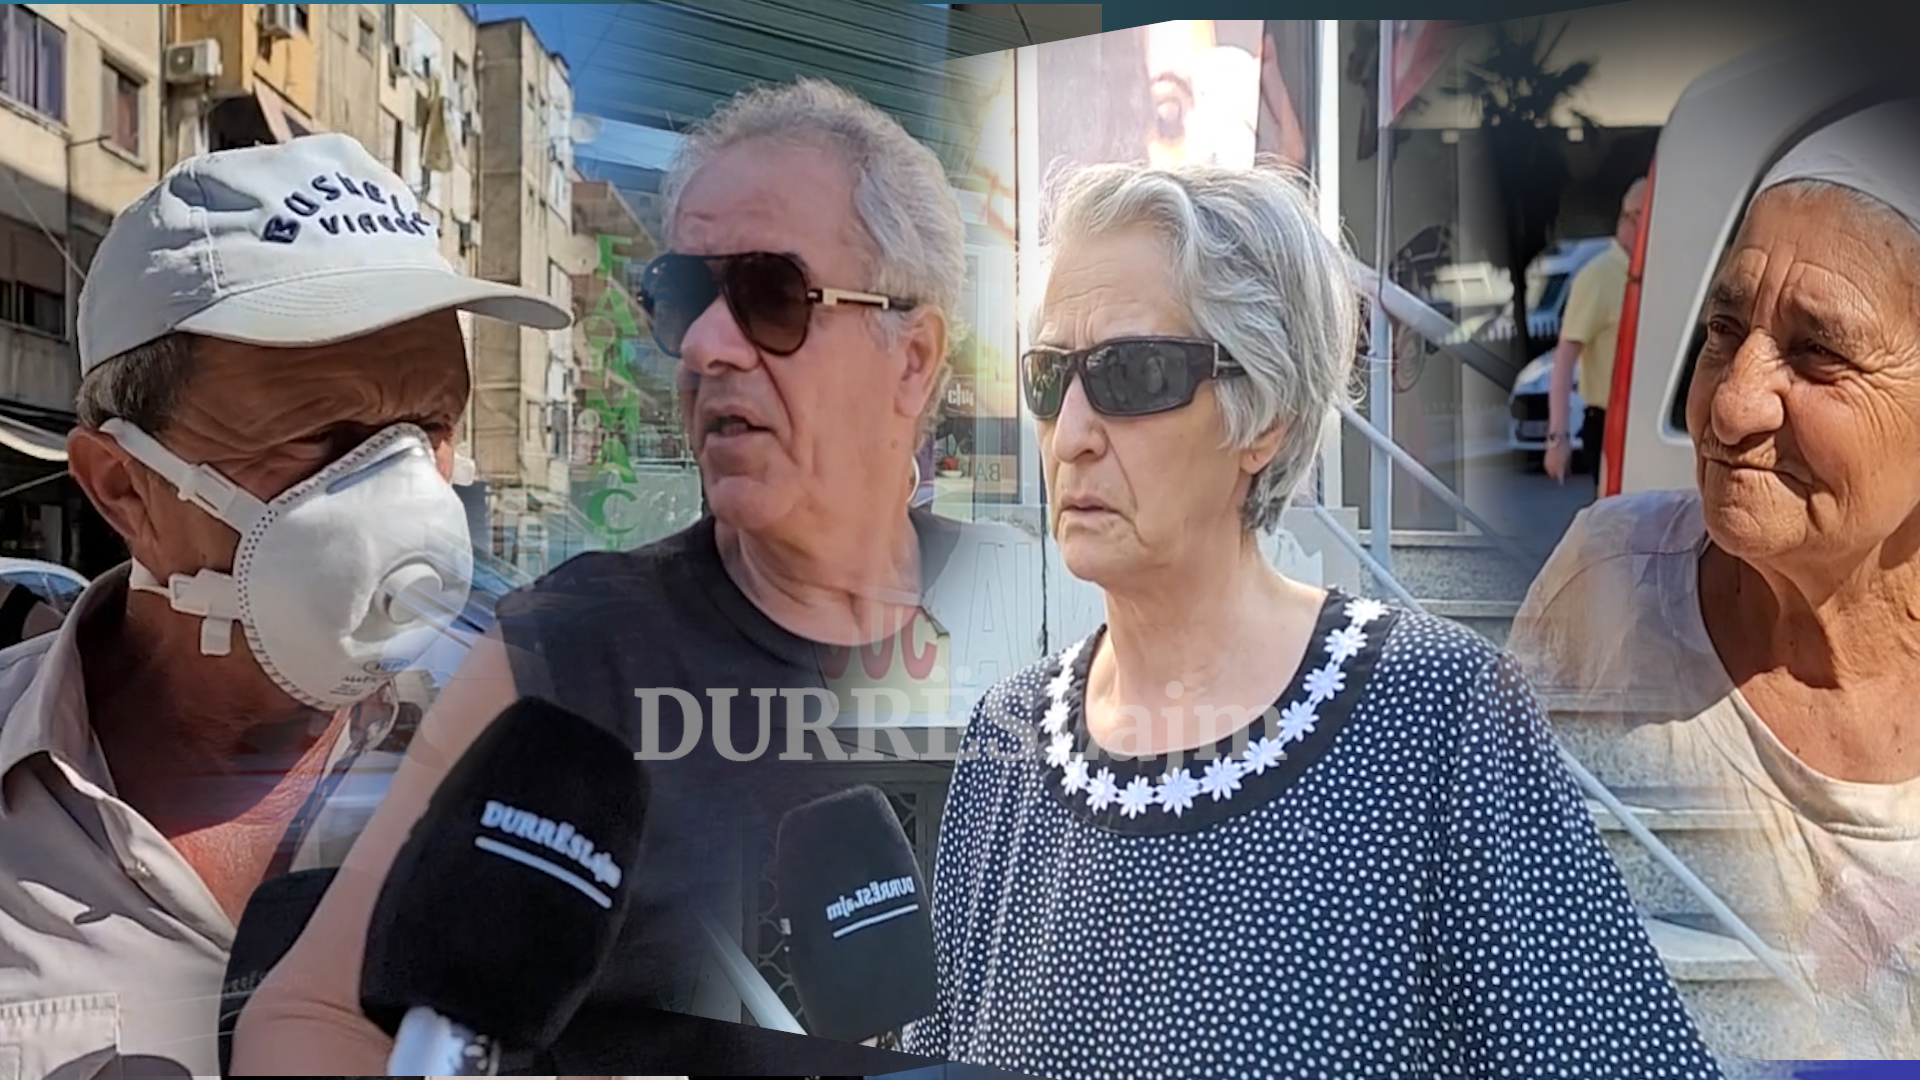 Iu hoq shtesa prej 3000 lekësh në muaj, të moshuarit e Durrësit: Duhen rritur pensionet, jemi shumë keq! (VIDEO)